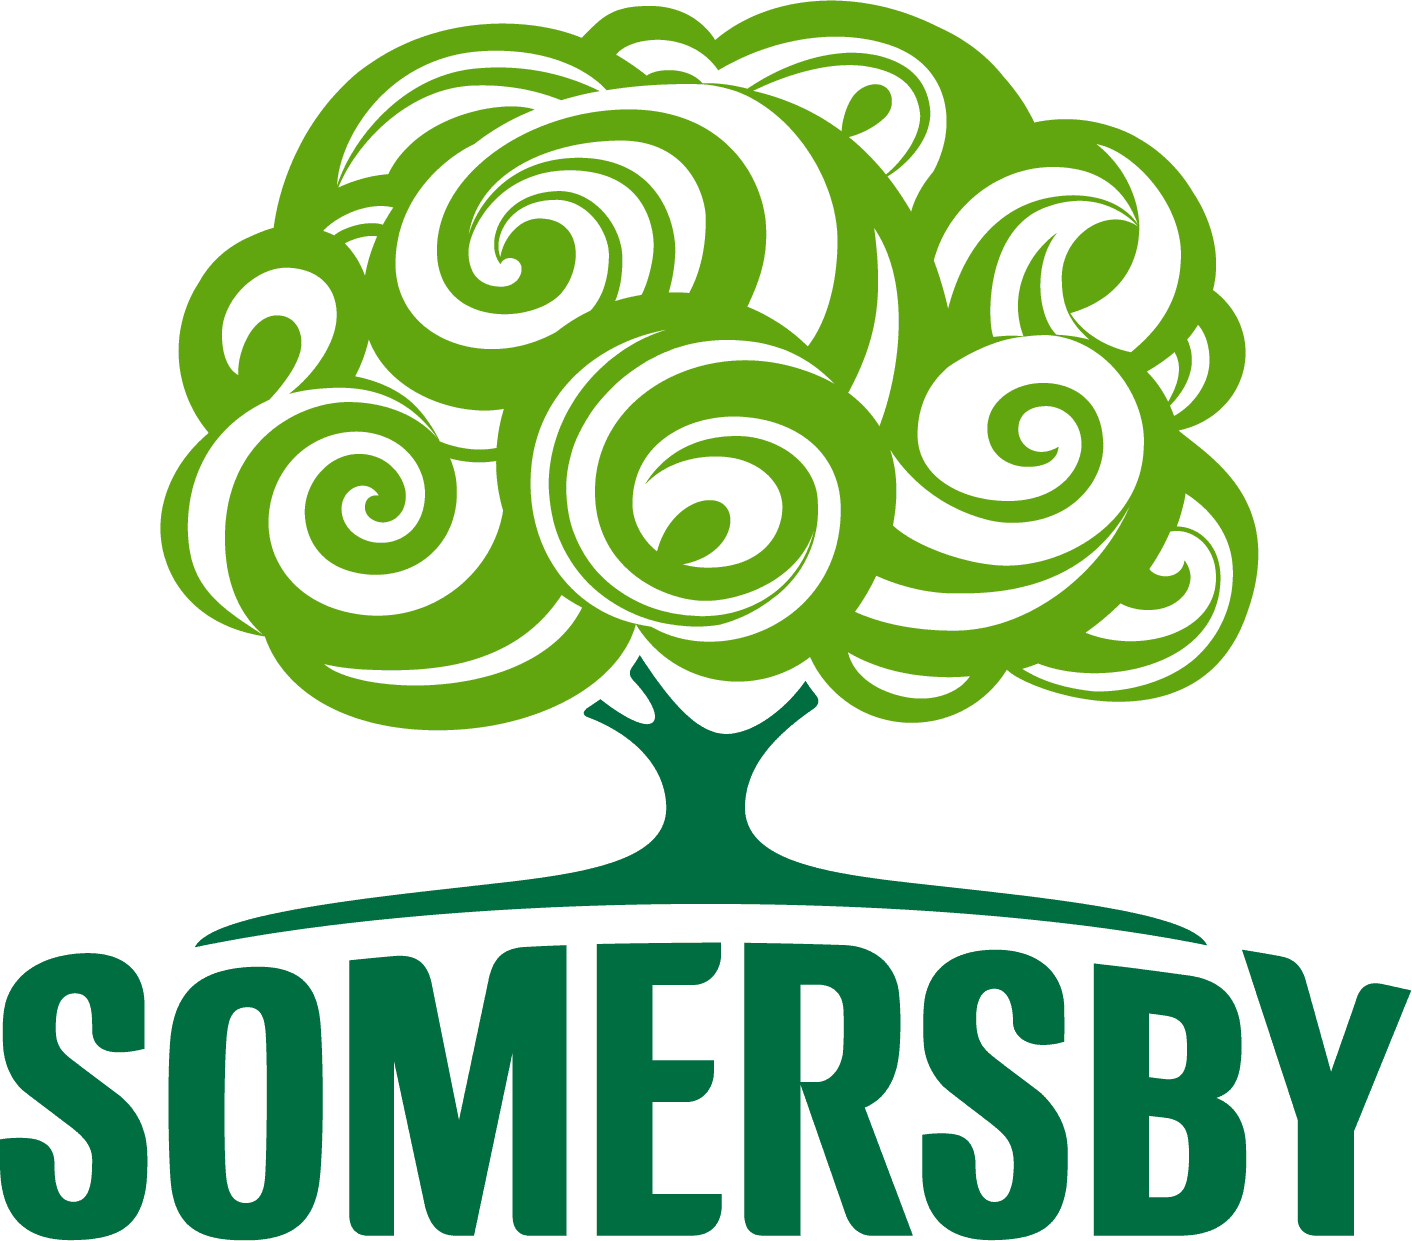 Somersby Logo